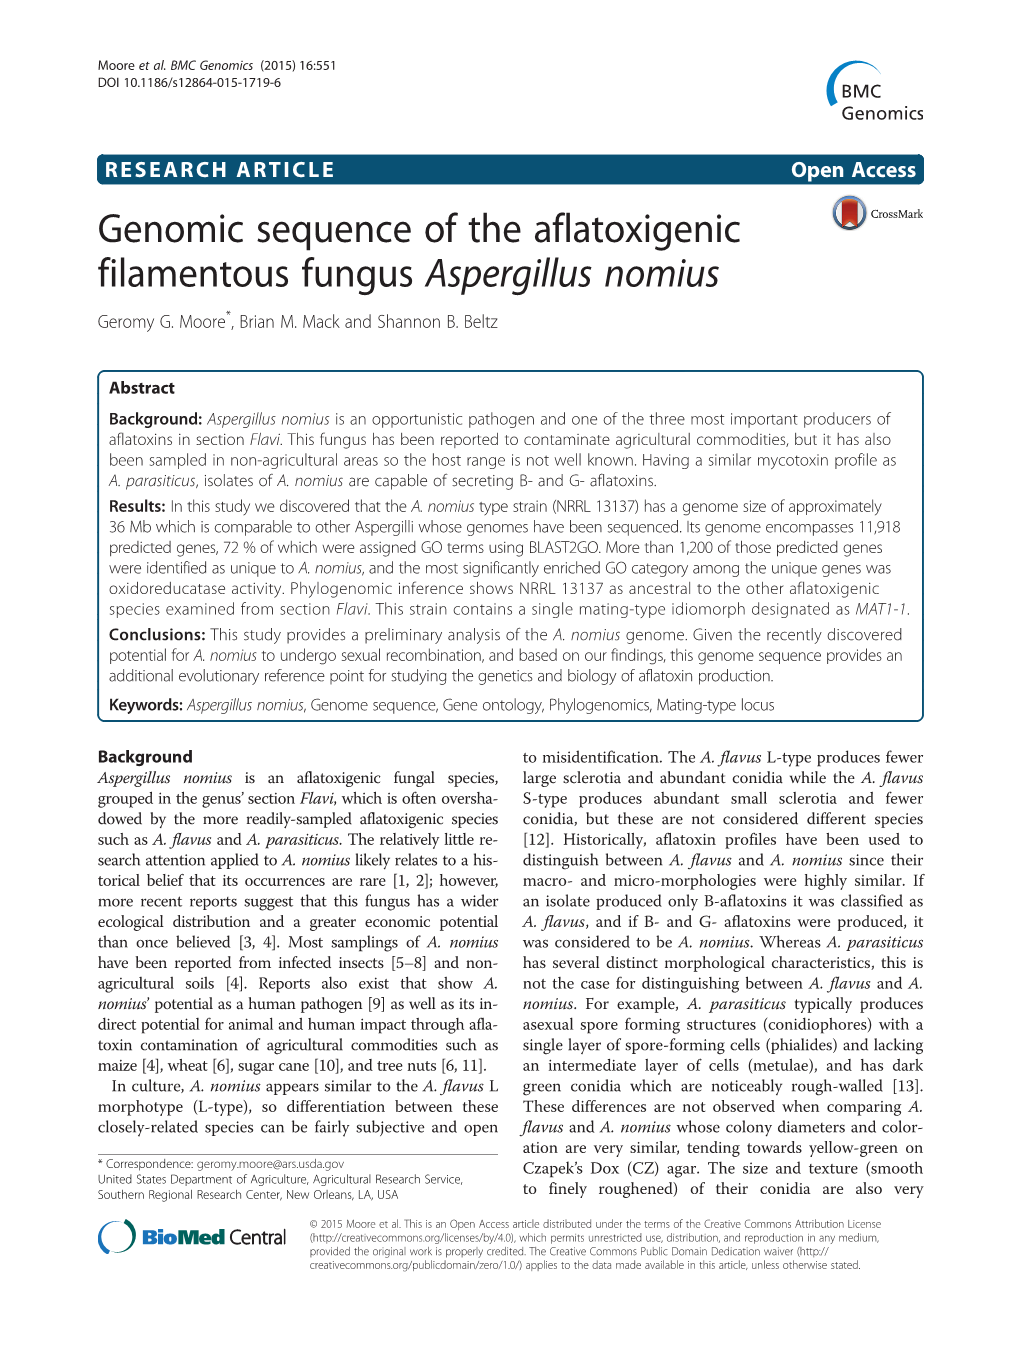 Genomic Sequence of the Aflatoxigenic Filamentous Fungus Aspergillus Nomius Geromy G